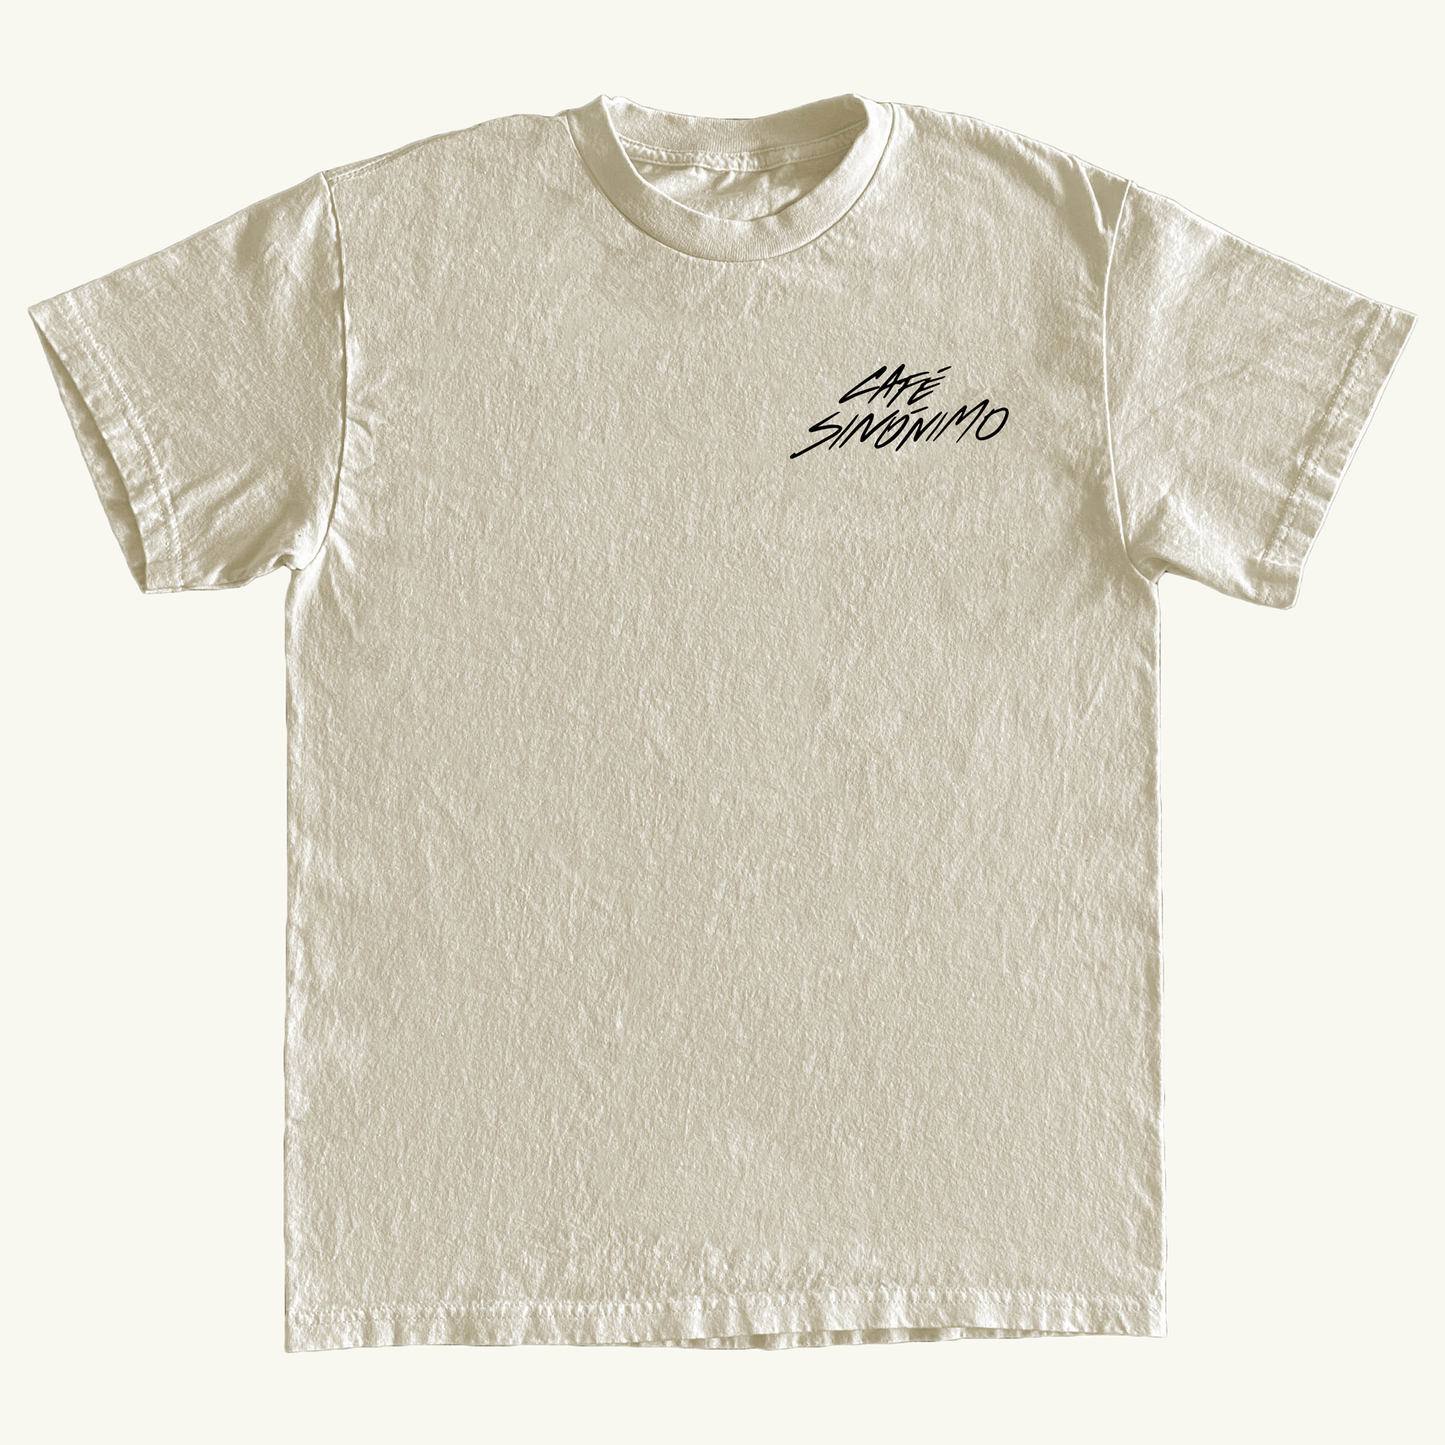 "Caile a florecer" T-Shirt